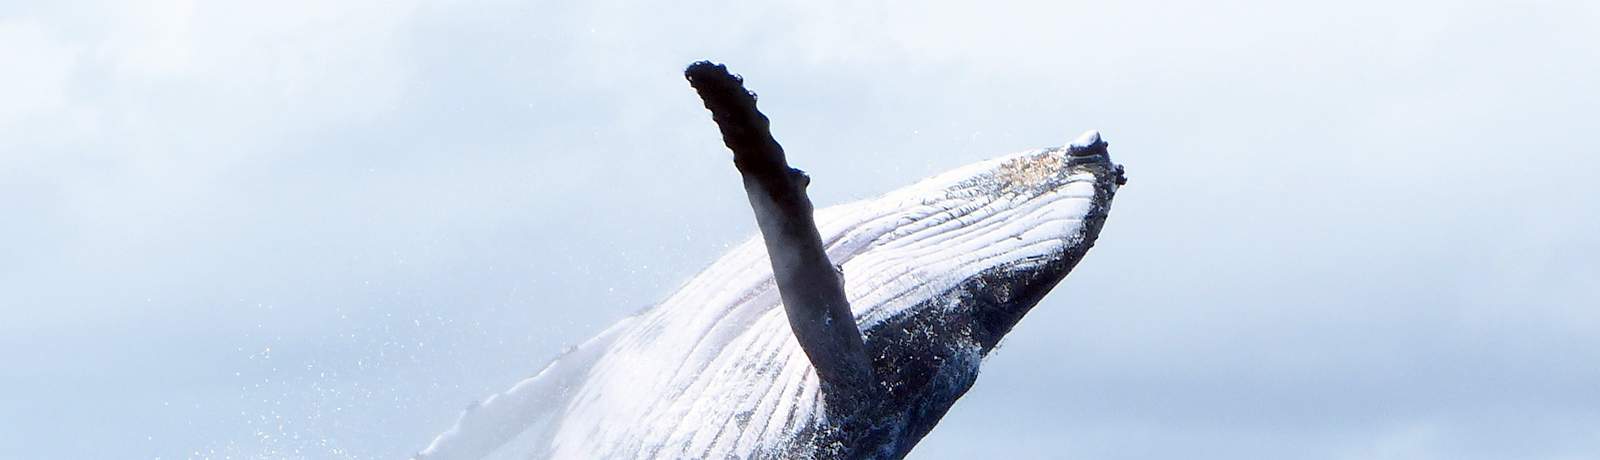 bora-bora-observation-des-baleines-en-groupe-bateau-a-moteur-banniere